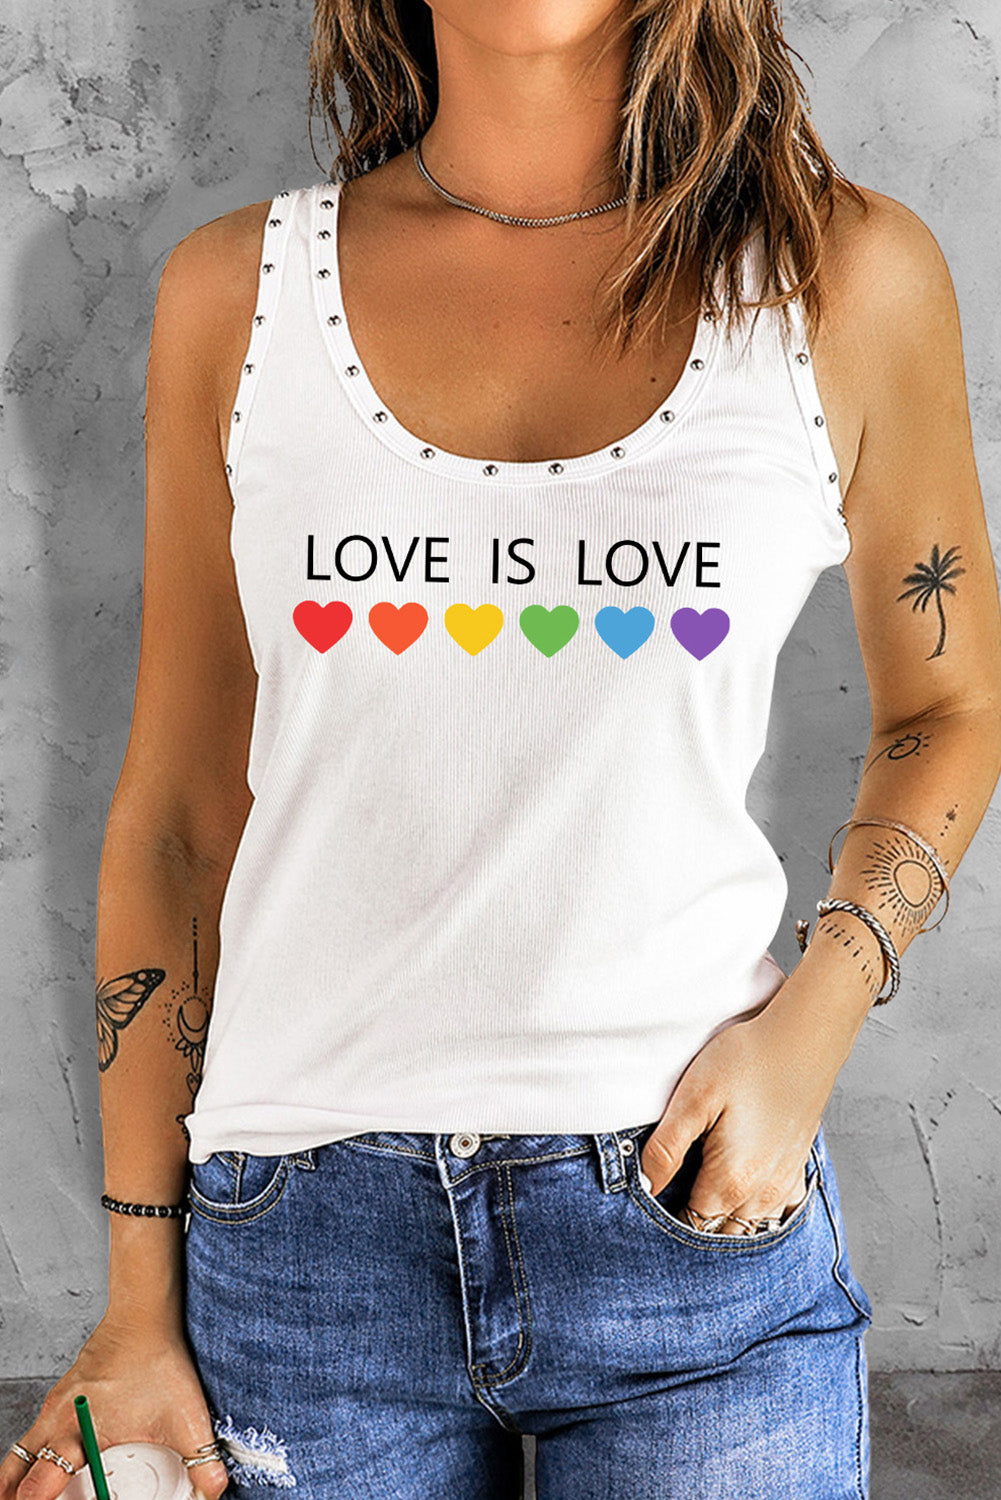 LC2566683-1-S, LC2566683-1-M, LC2566683-1-L, LC2566683-1-XL, LC2566683-1-2XL, White Love is Love Print Women's Gay Pride Tank Tops Scoop Neck Rivet Tank Top